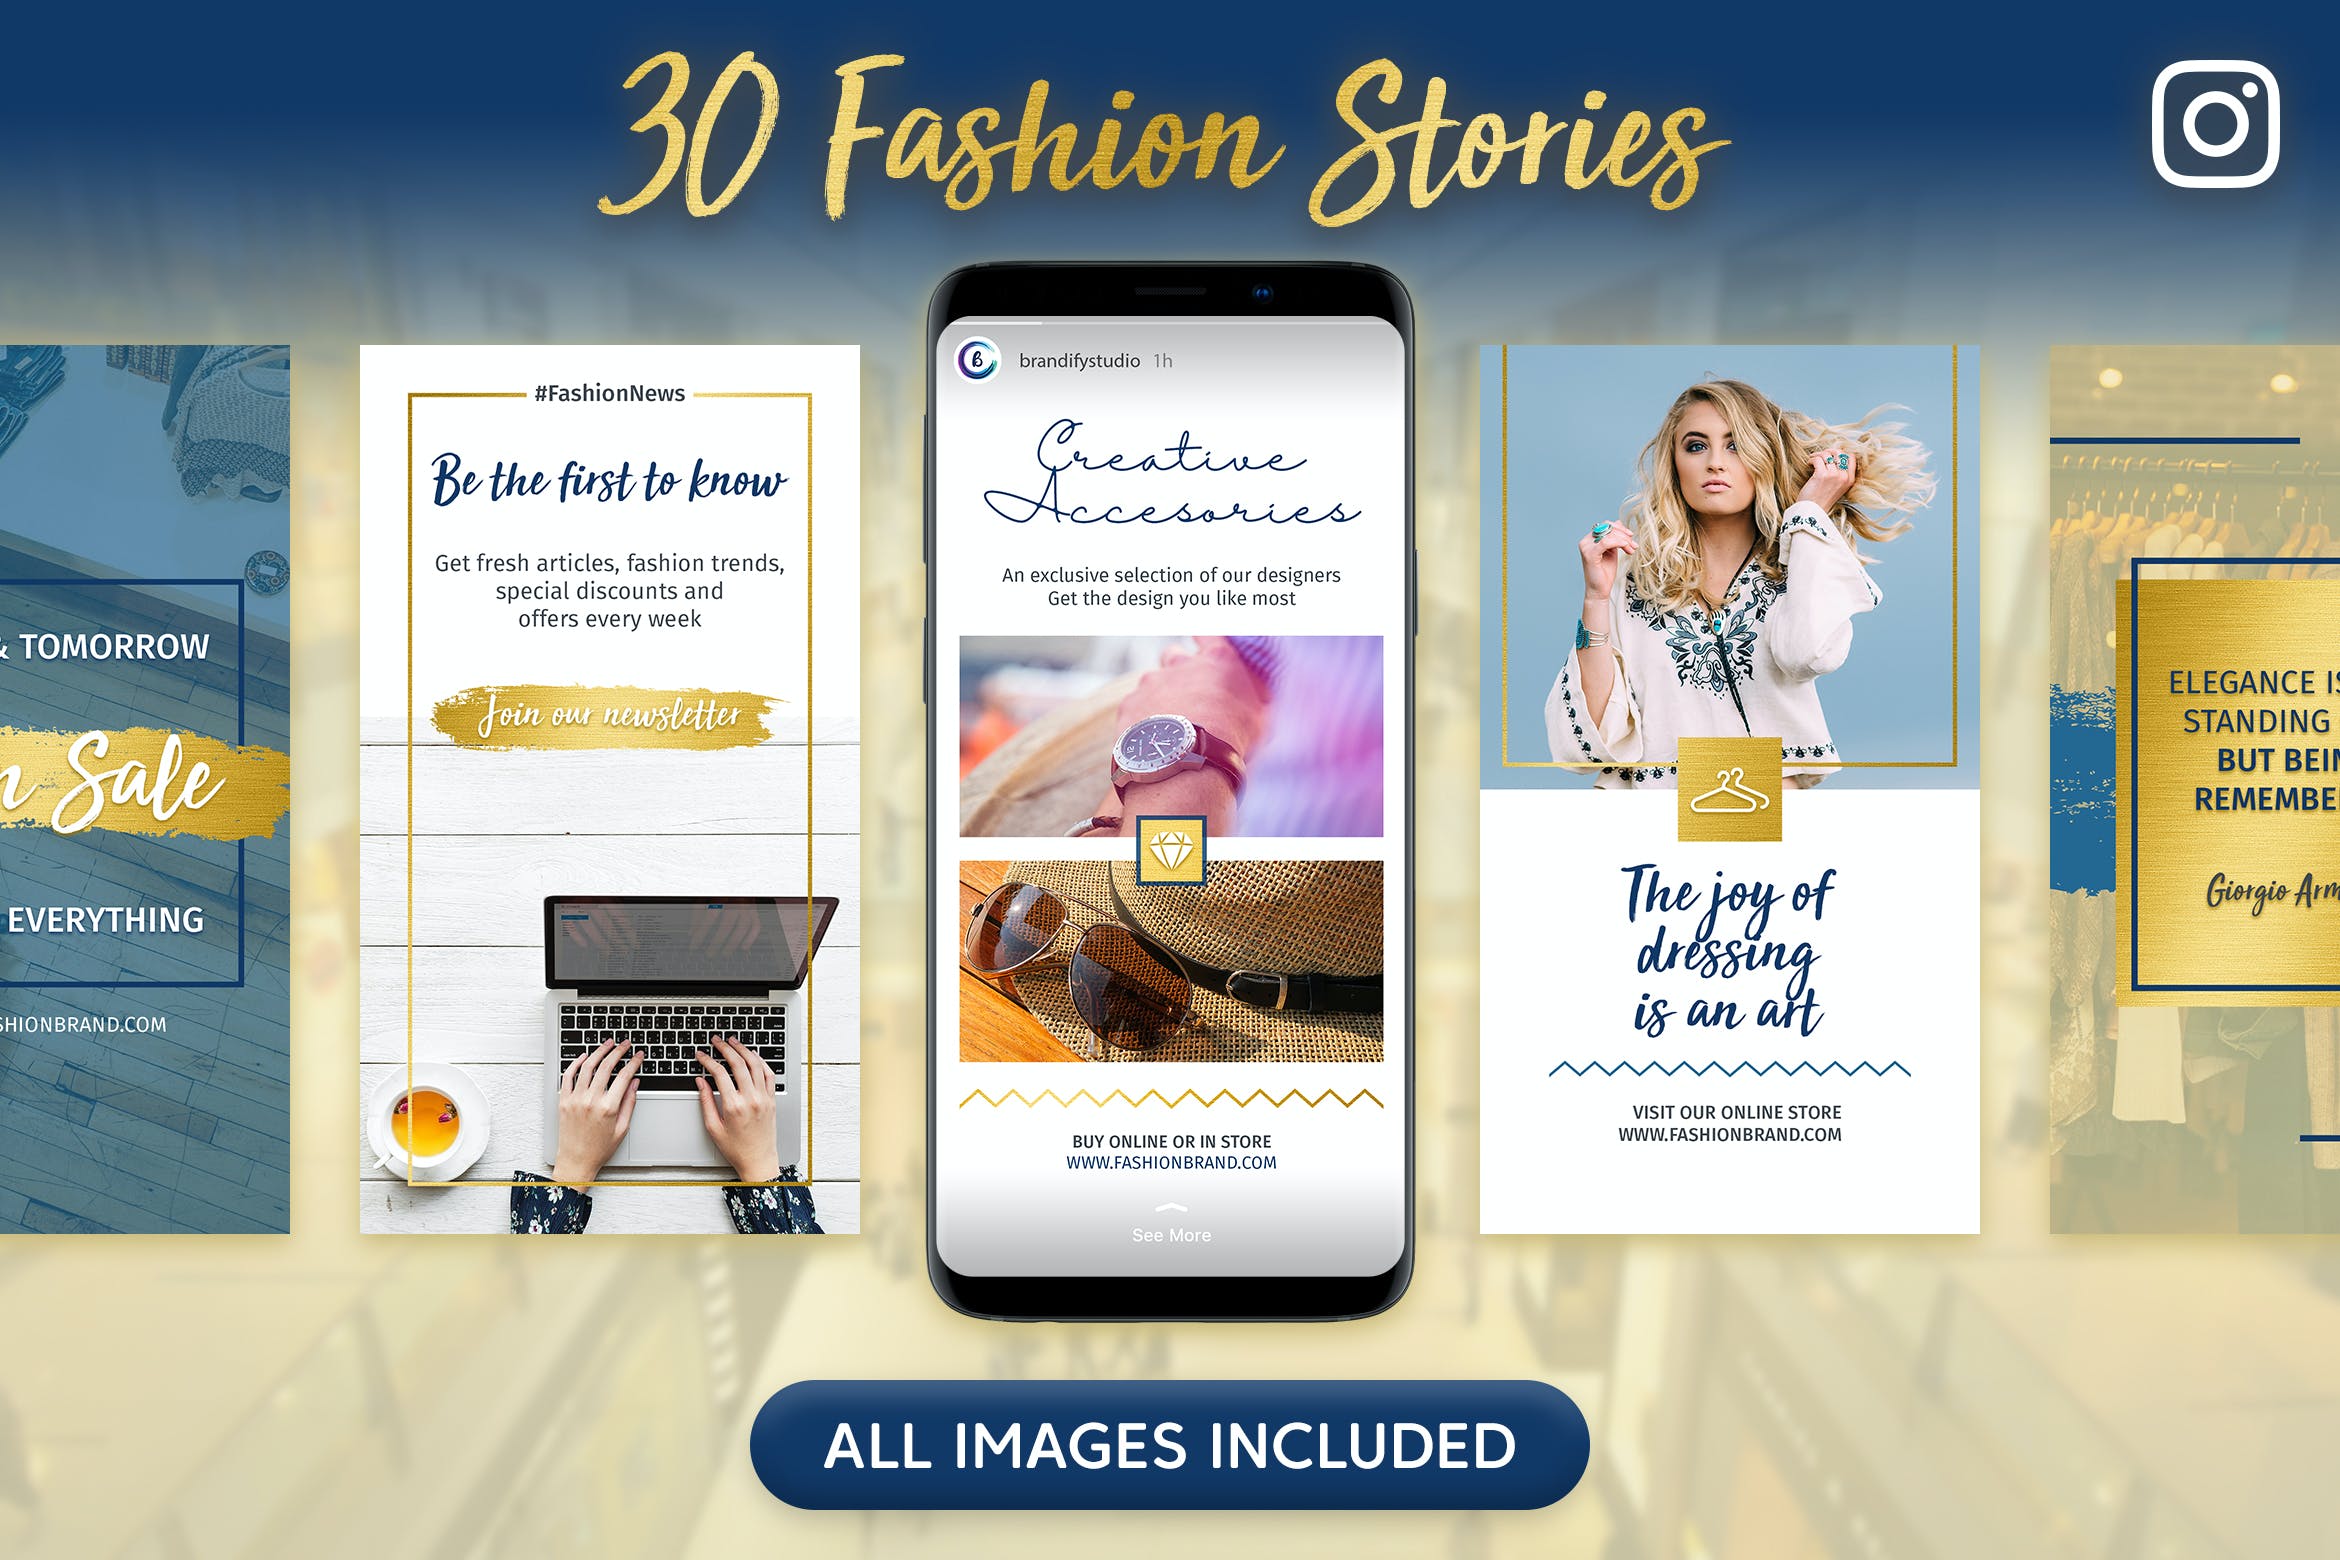 三十个时装商店社交媒体品牌促销Instagram故事设计模板 Instagram Stories设计素材模板